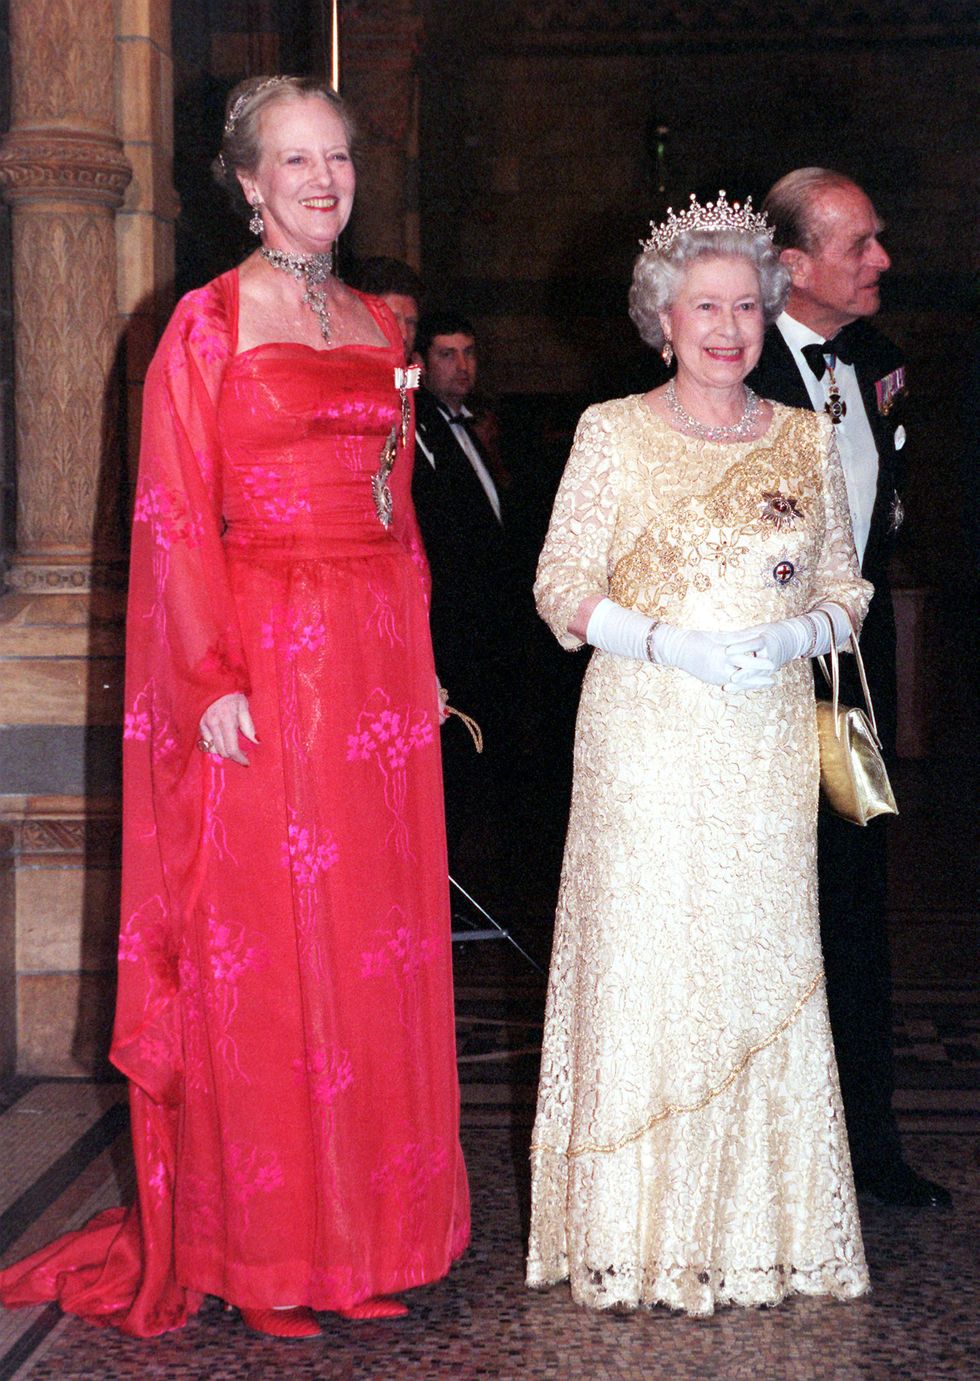 英國皇室,英國女王,丹麥皇室,丹麥女王,伊莉莎白二世,瑪格麗特二世,皇室, elizabeth ii, queen elizabeth ii, 伊莉莎白女王, 伊莉莎白二世, 女王伊莉莎白二世